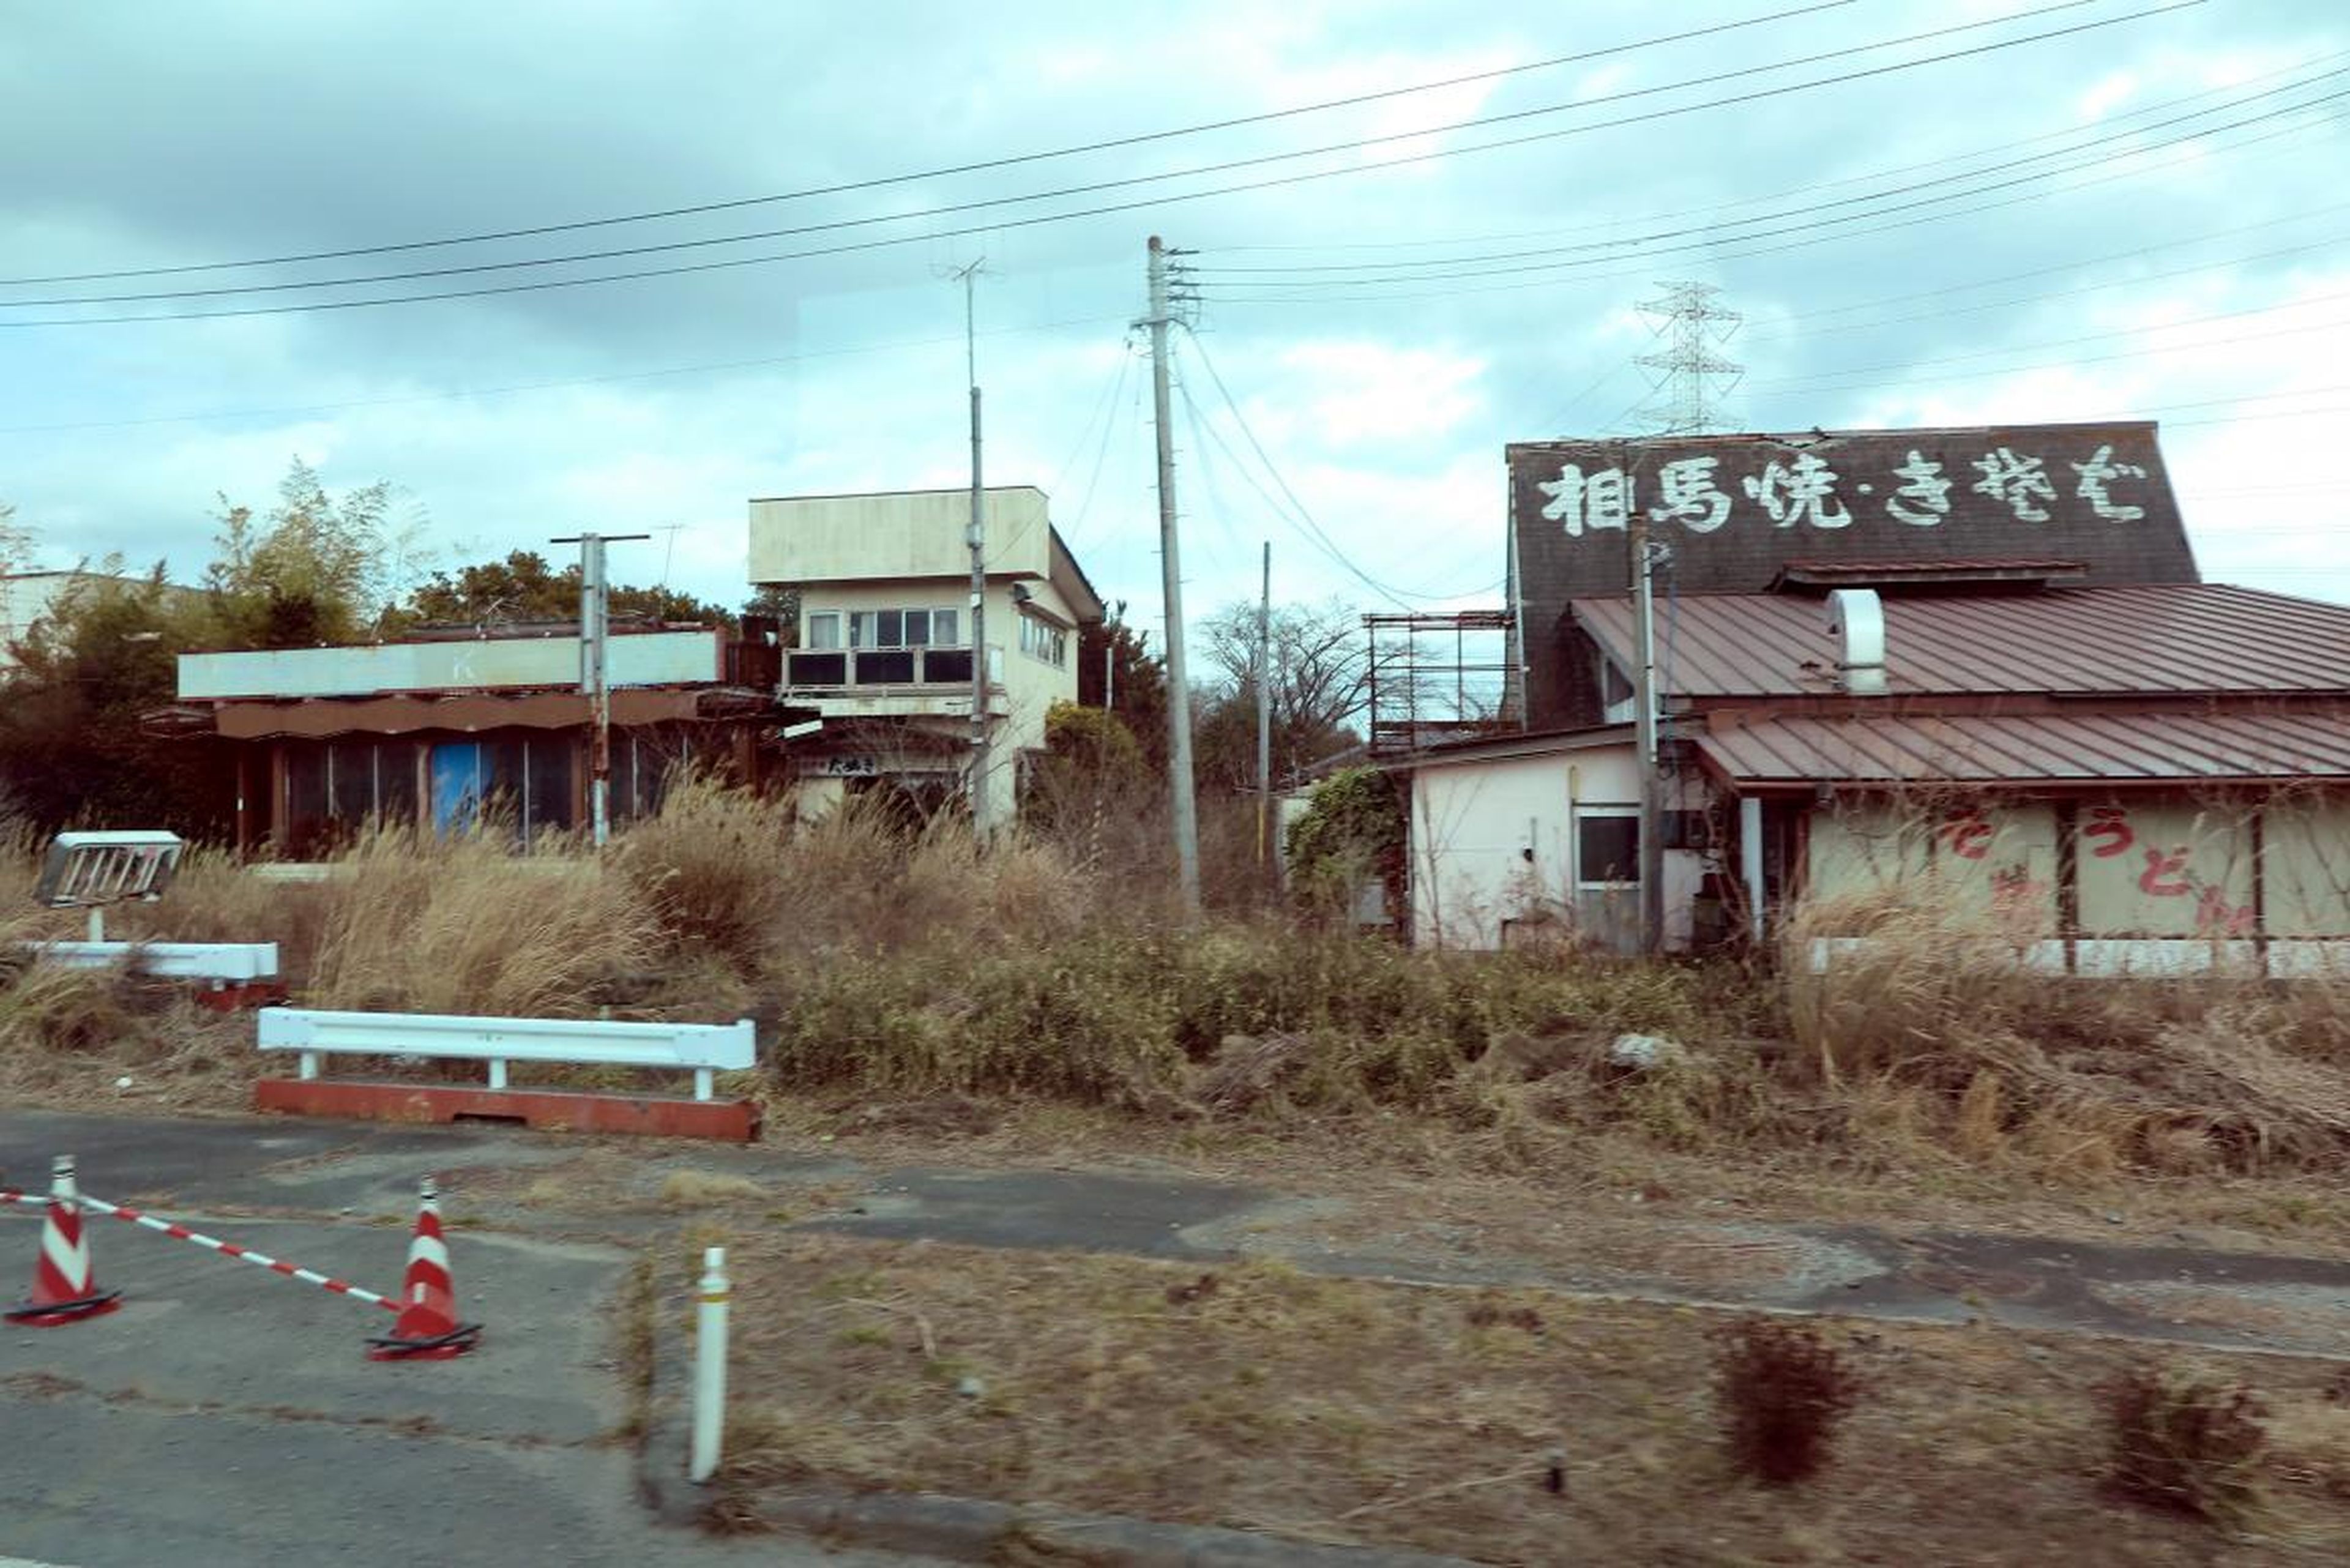 Casas abandonadas en la ciudad de Okuma, Japón.